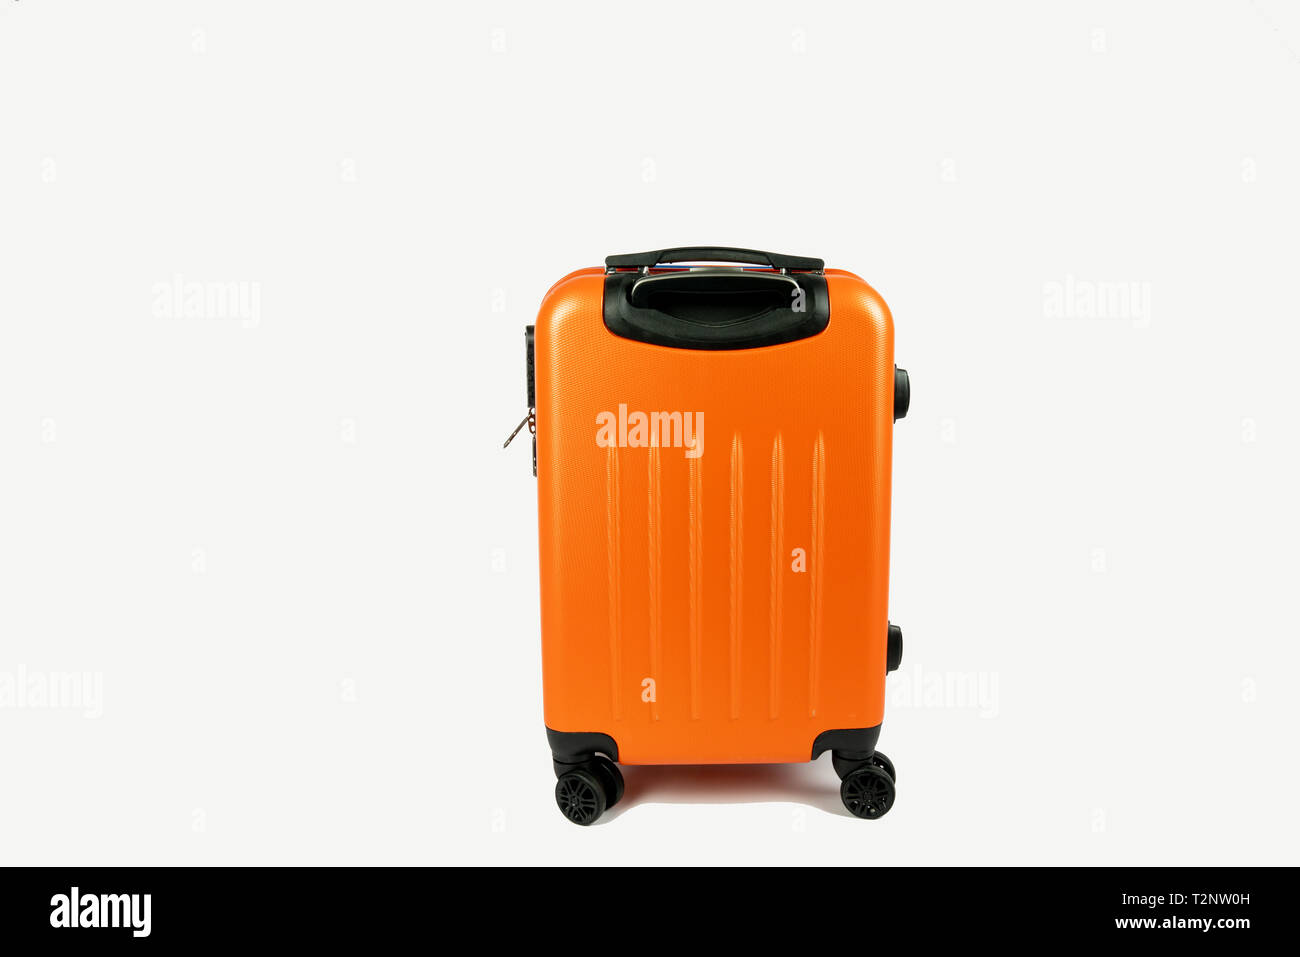 Moderno valigia arancione. Pronto ad andare per la vostra vacanza o viaggio di lavoro. La valigia è su sfondo bianco con spazio accanto ad essa per il proprio testo. Foto Stock